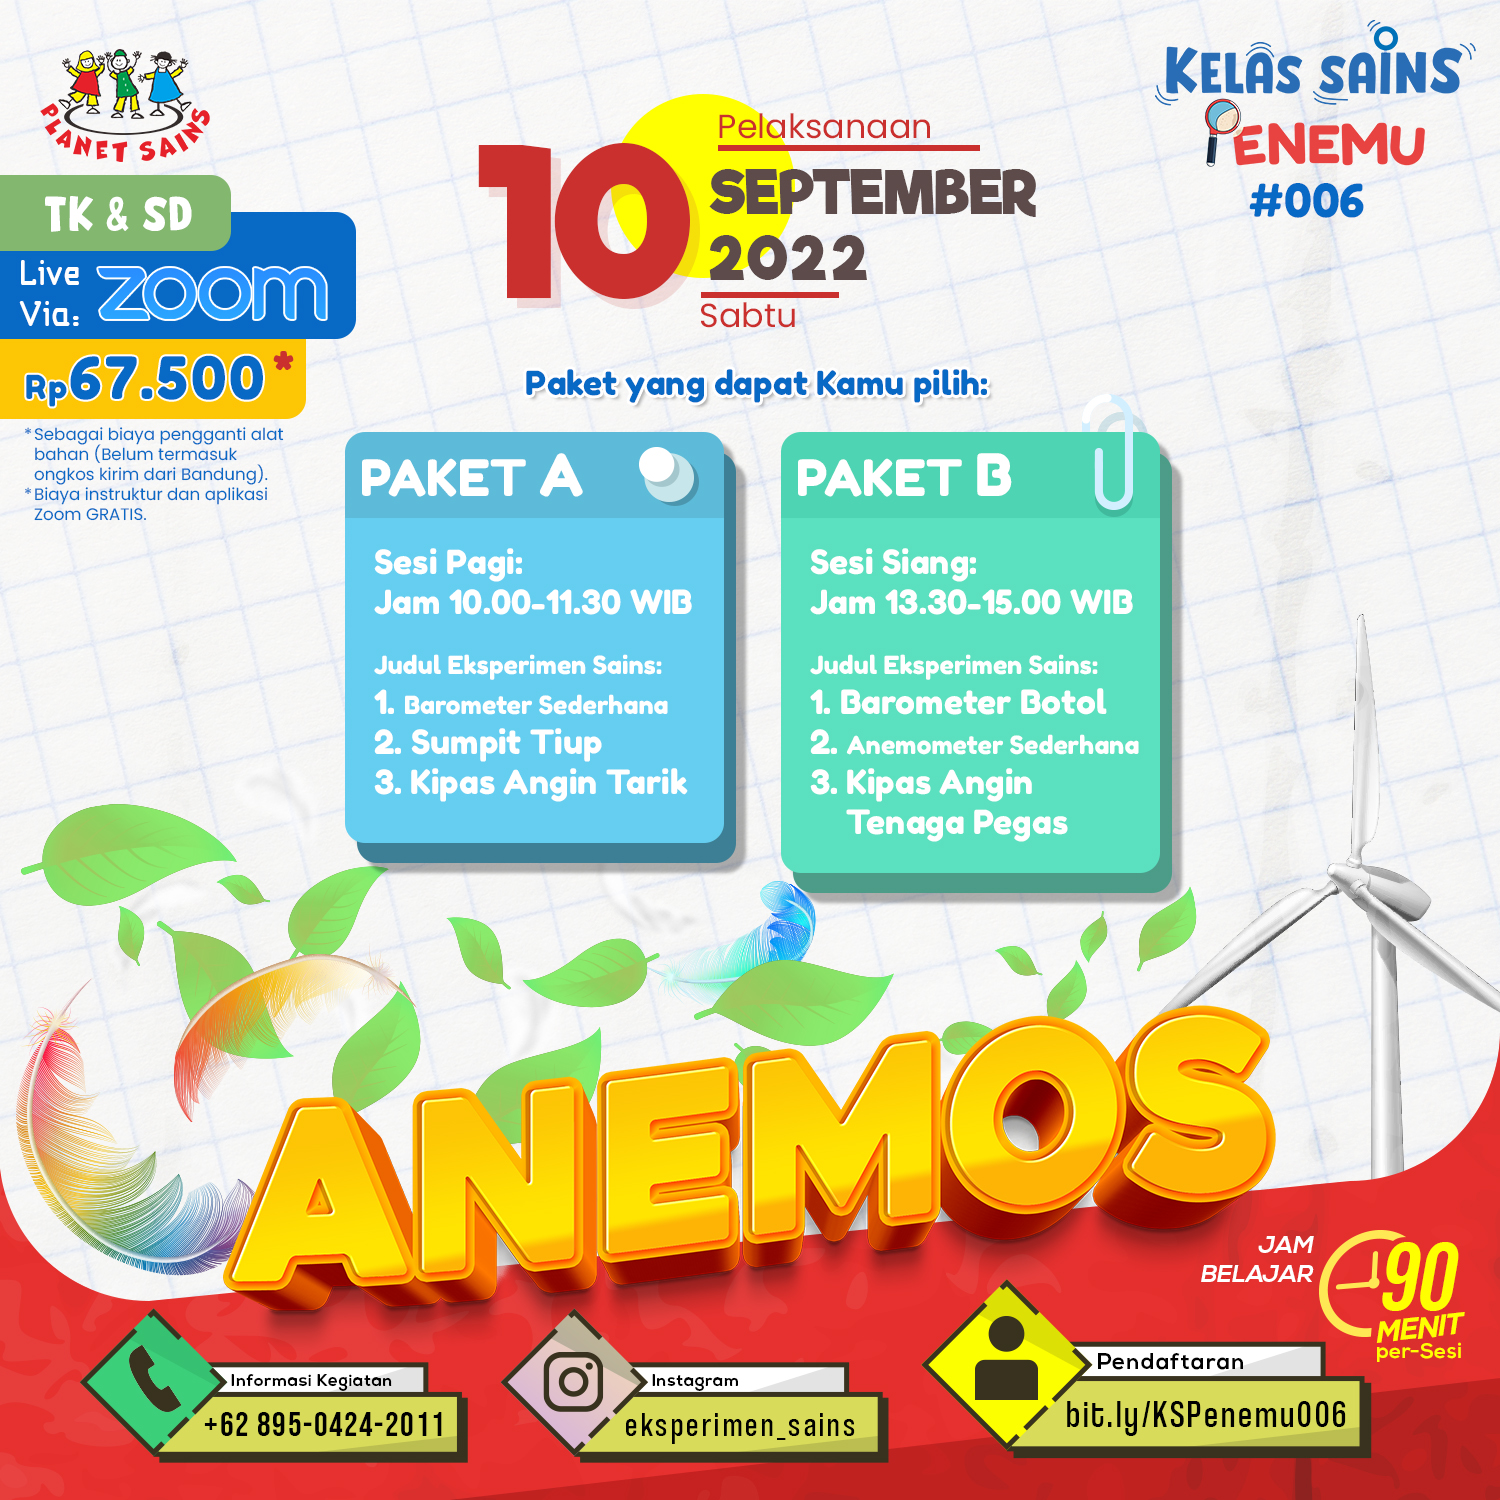 KELAS SAINS PENEMU #006 - ANEMOS (10 September 2022)